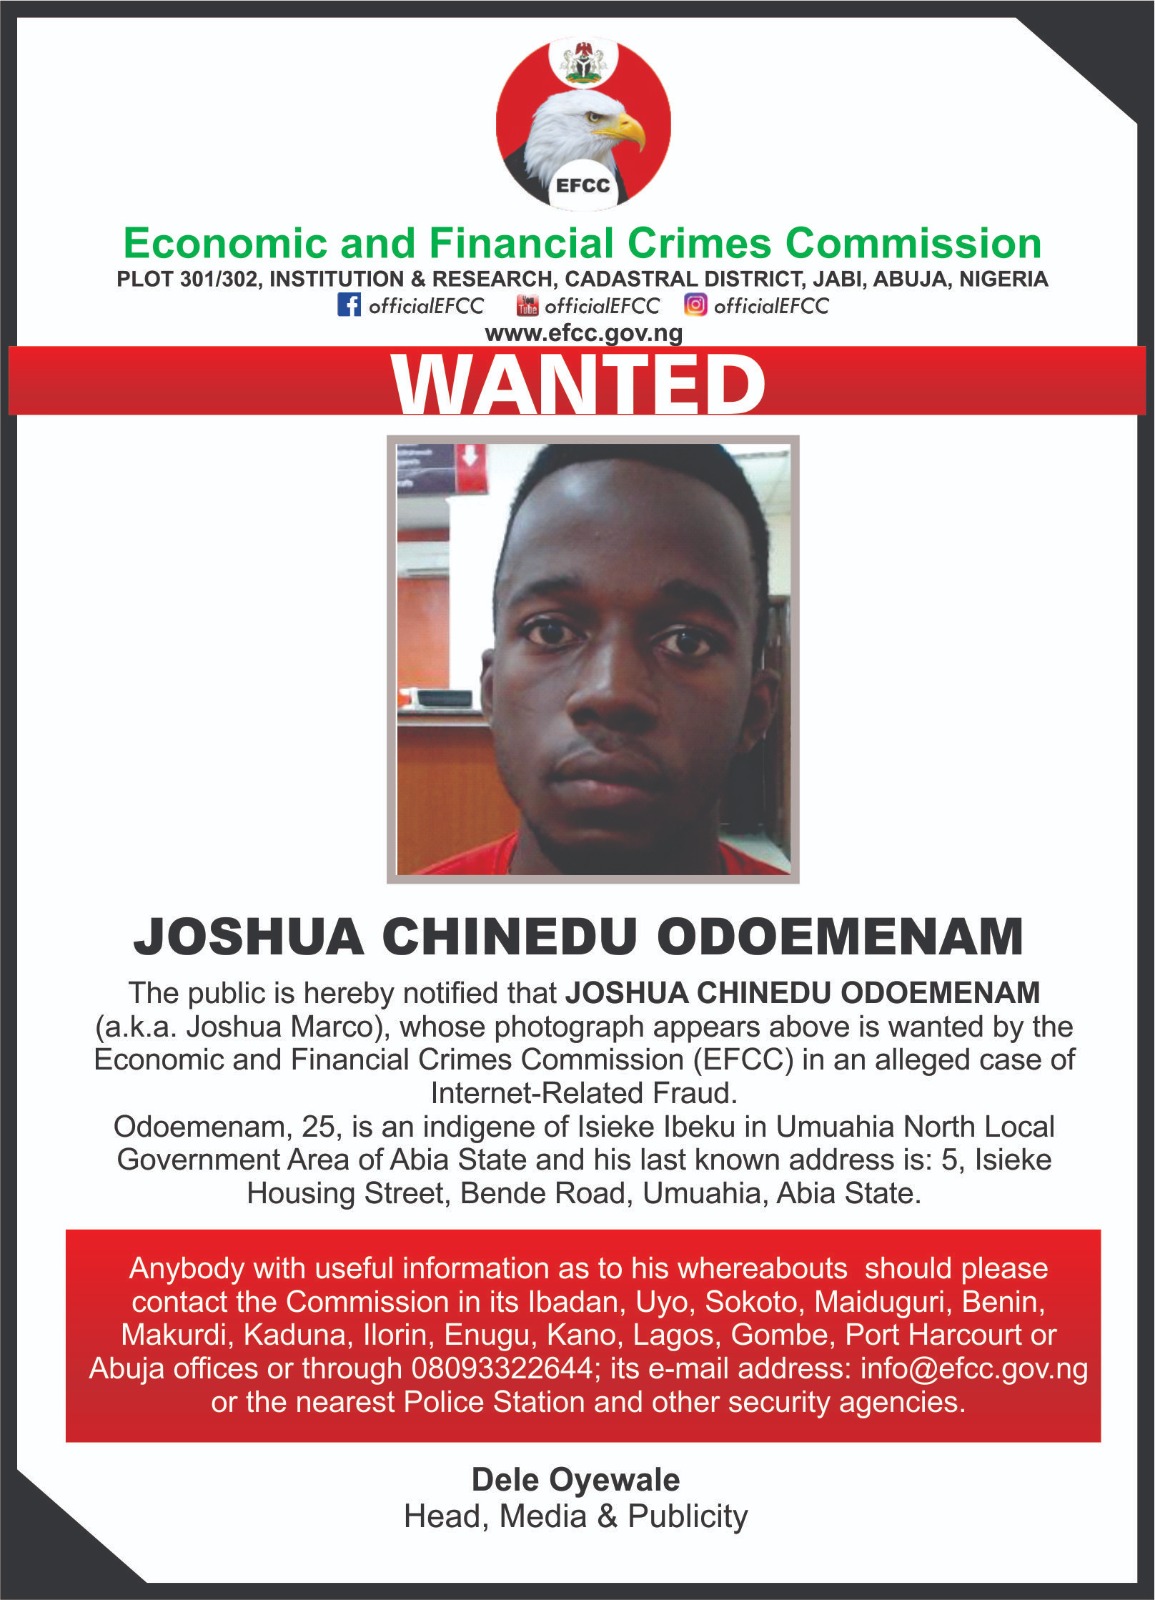 EFCC declares 25-year-old Odoemenam wanted for Internet Fraud